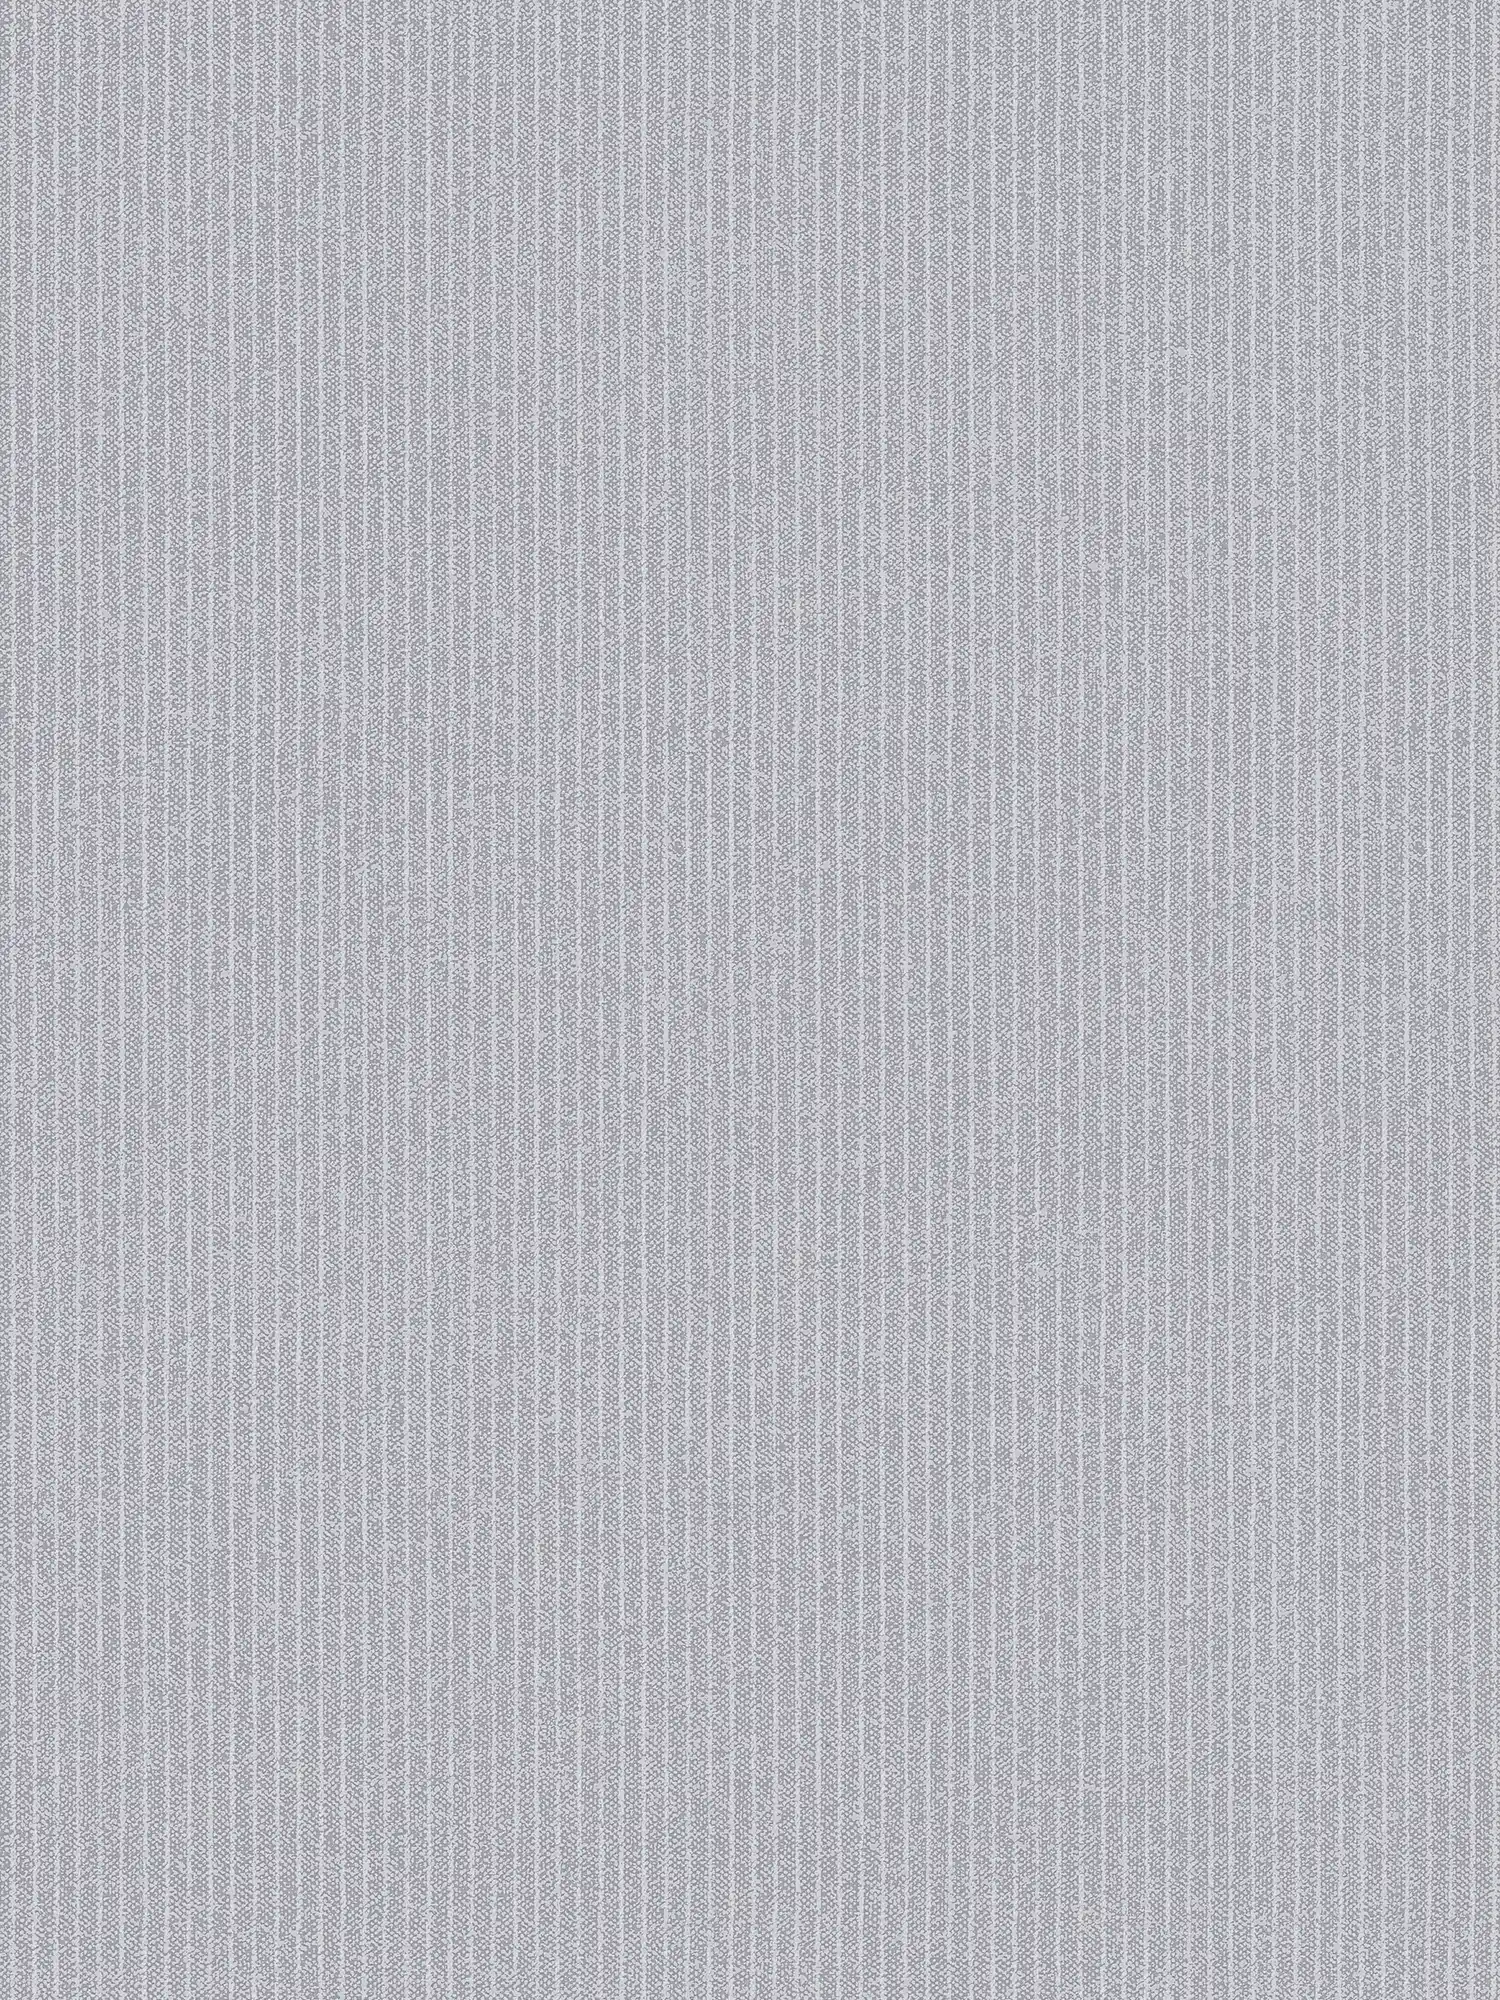 Carta da parati foderata a righe strette in look tessile - grigio
